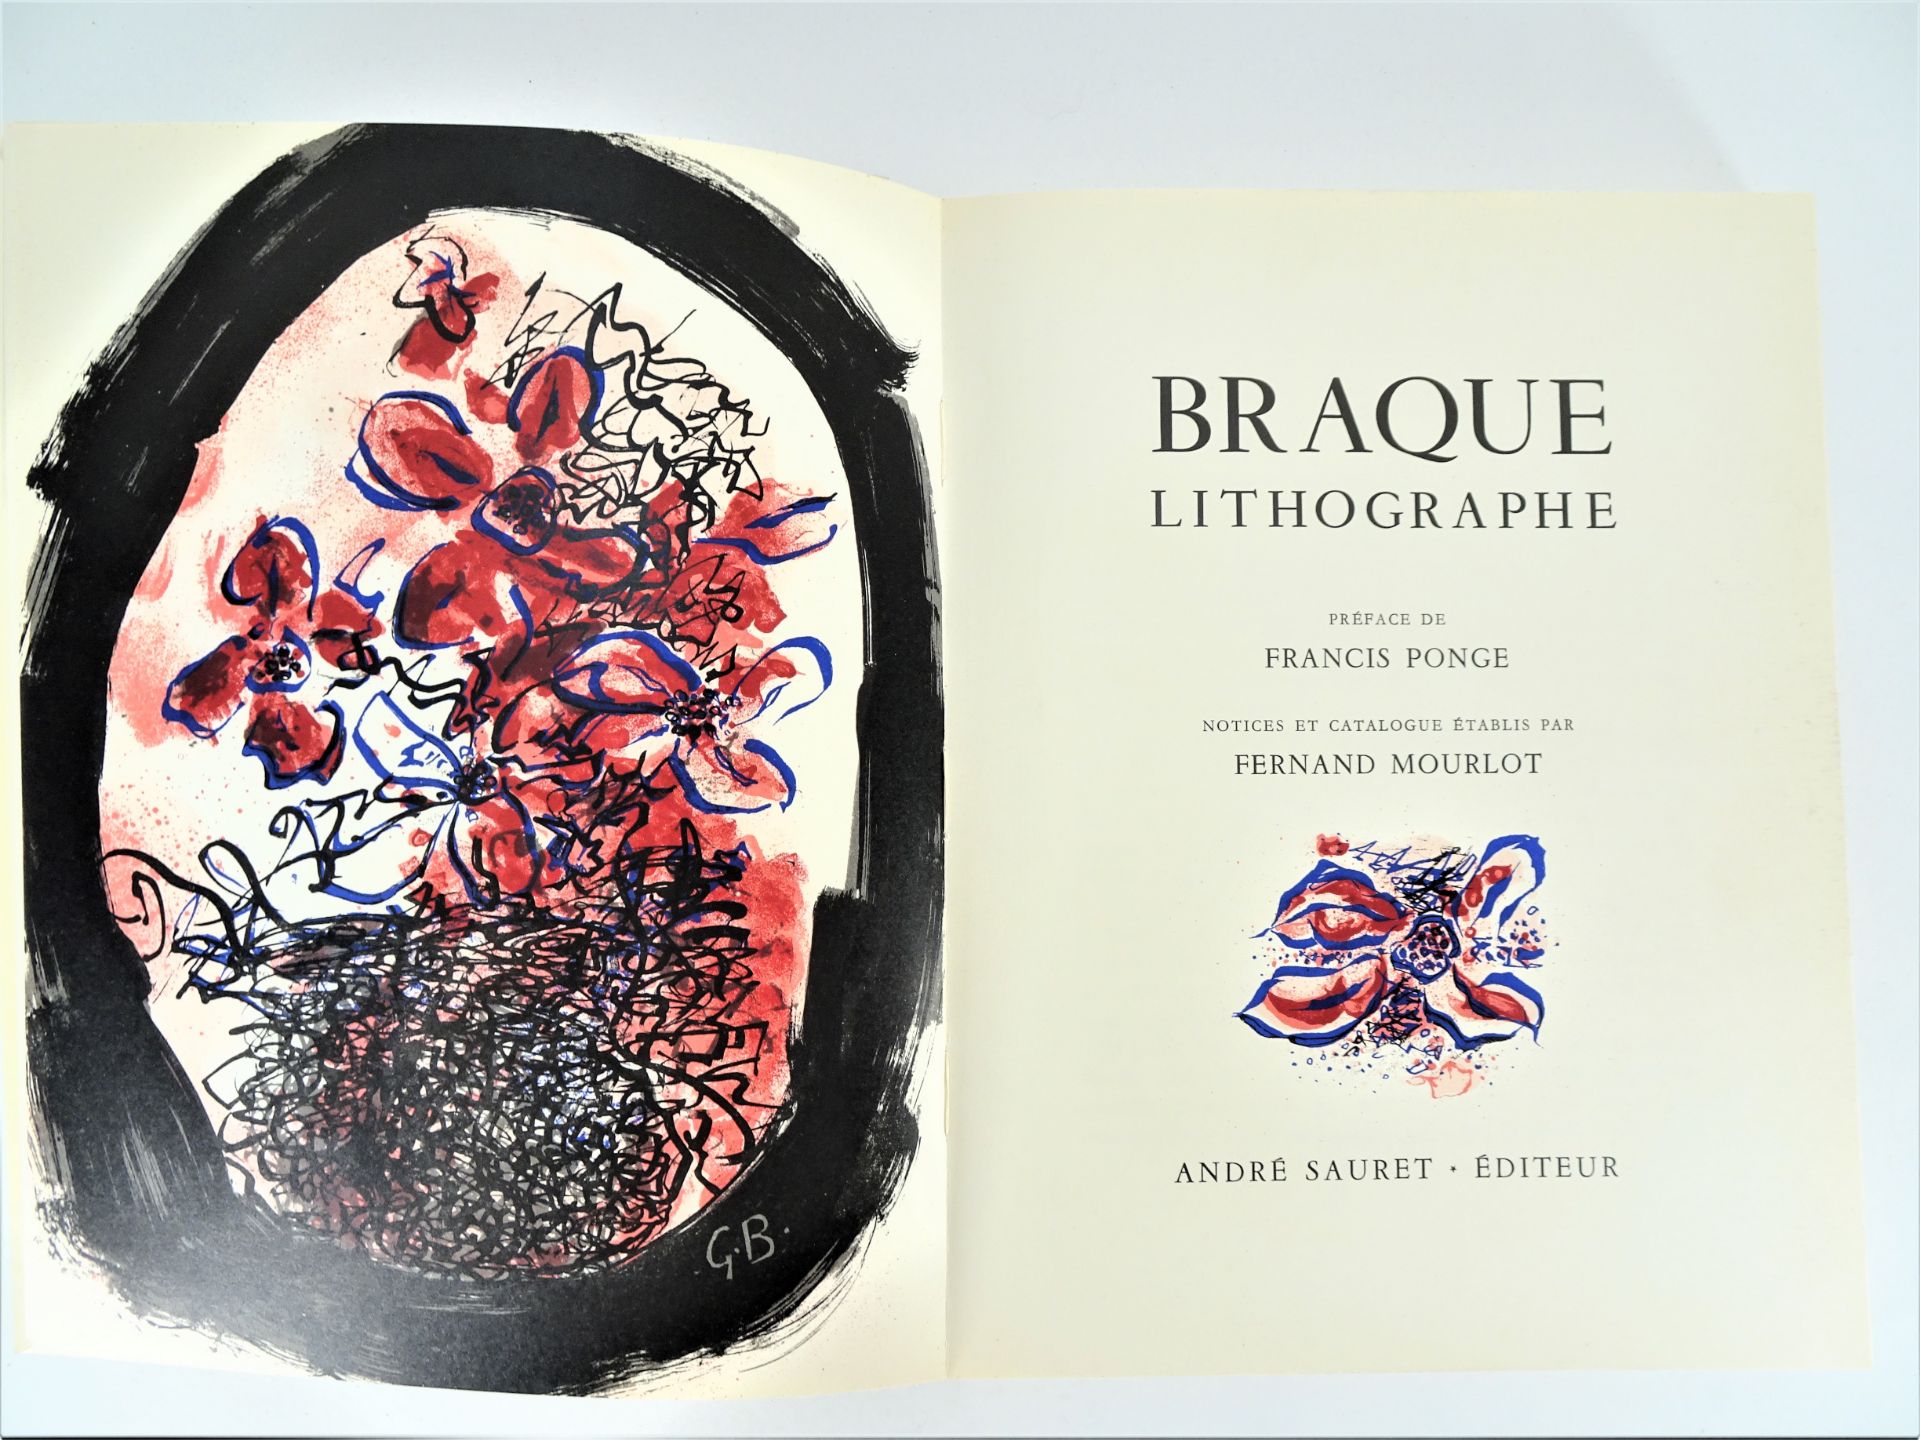 |Art| George Braque, "Braque lithographe", 1963, édition limitée. Fernand Mourlot, catalogue - Image 2 of 12